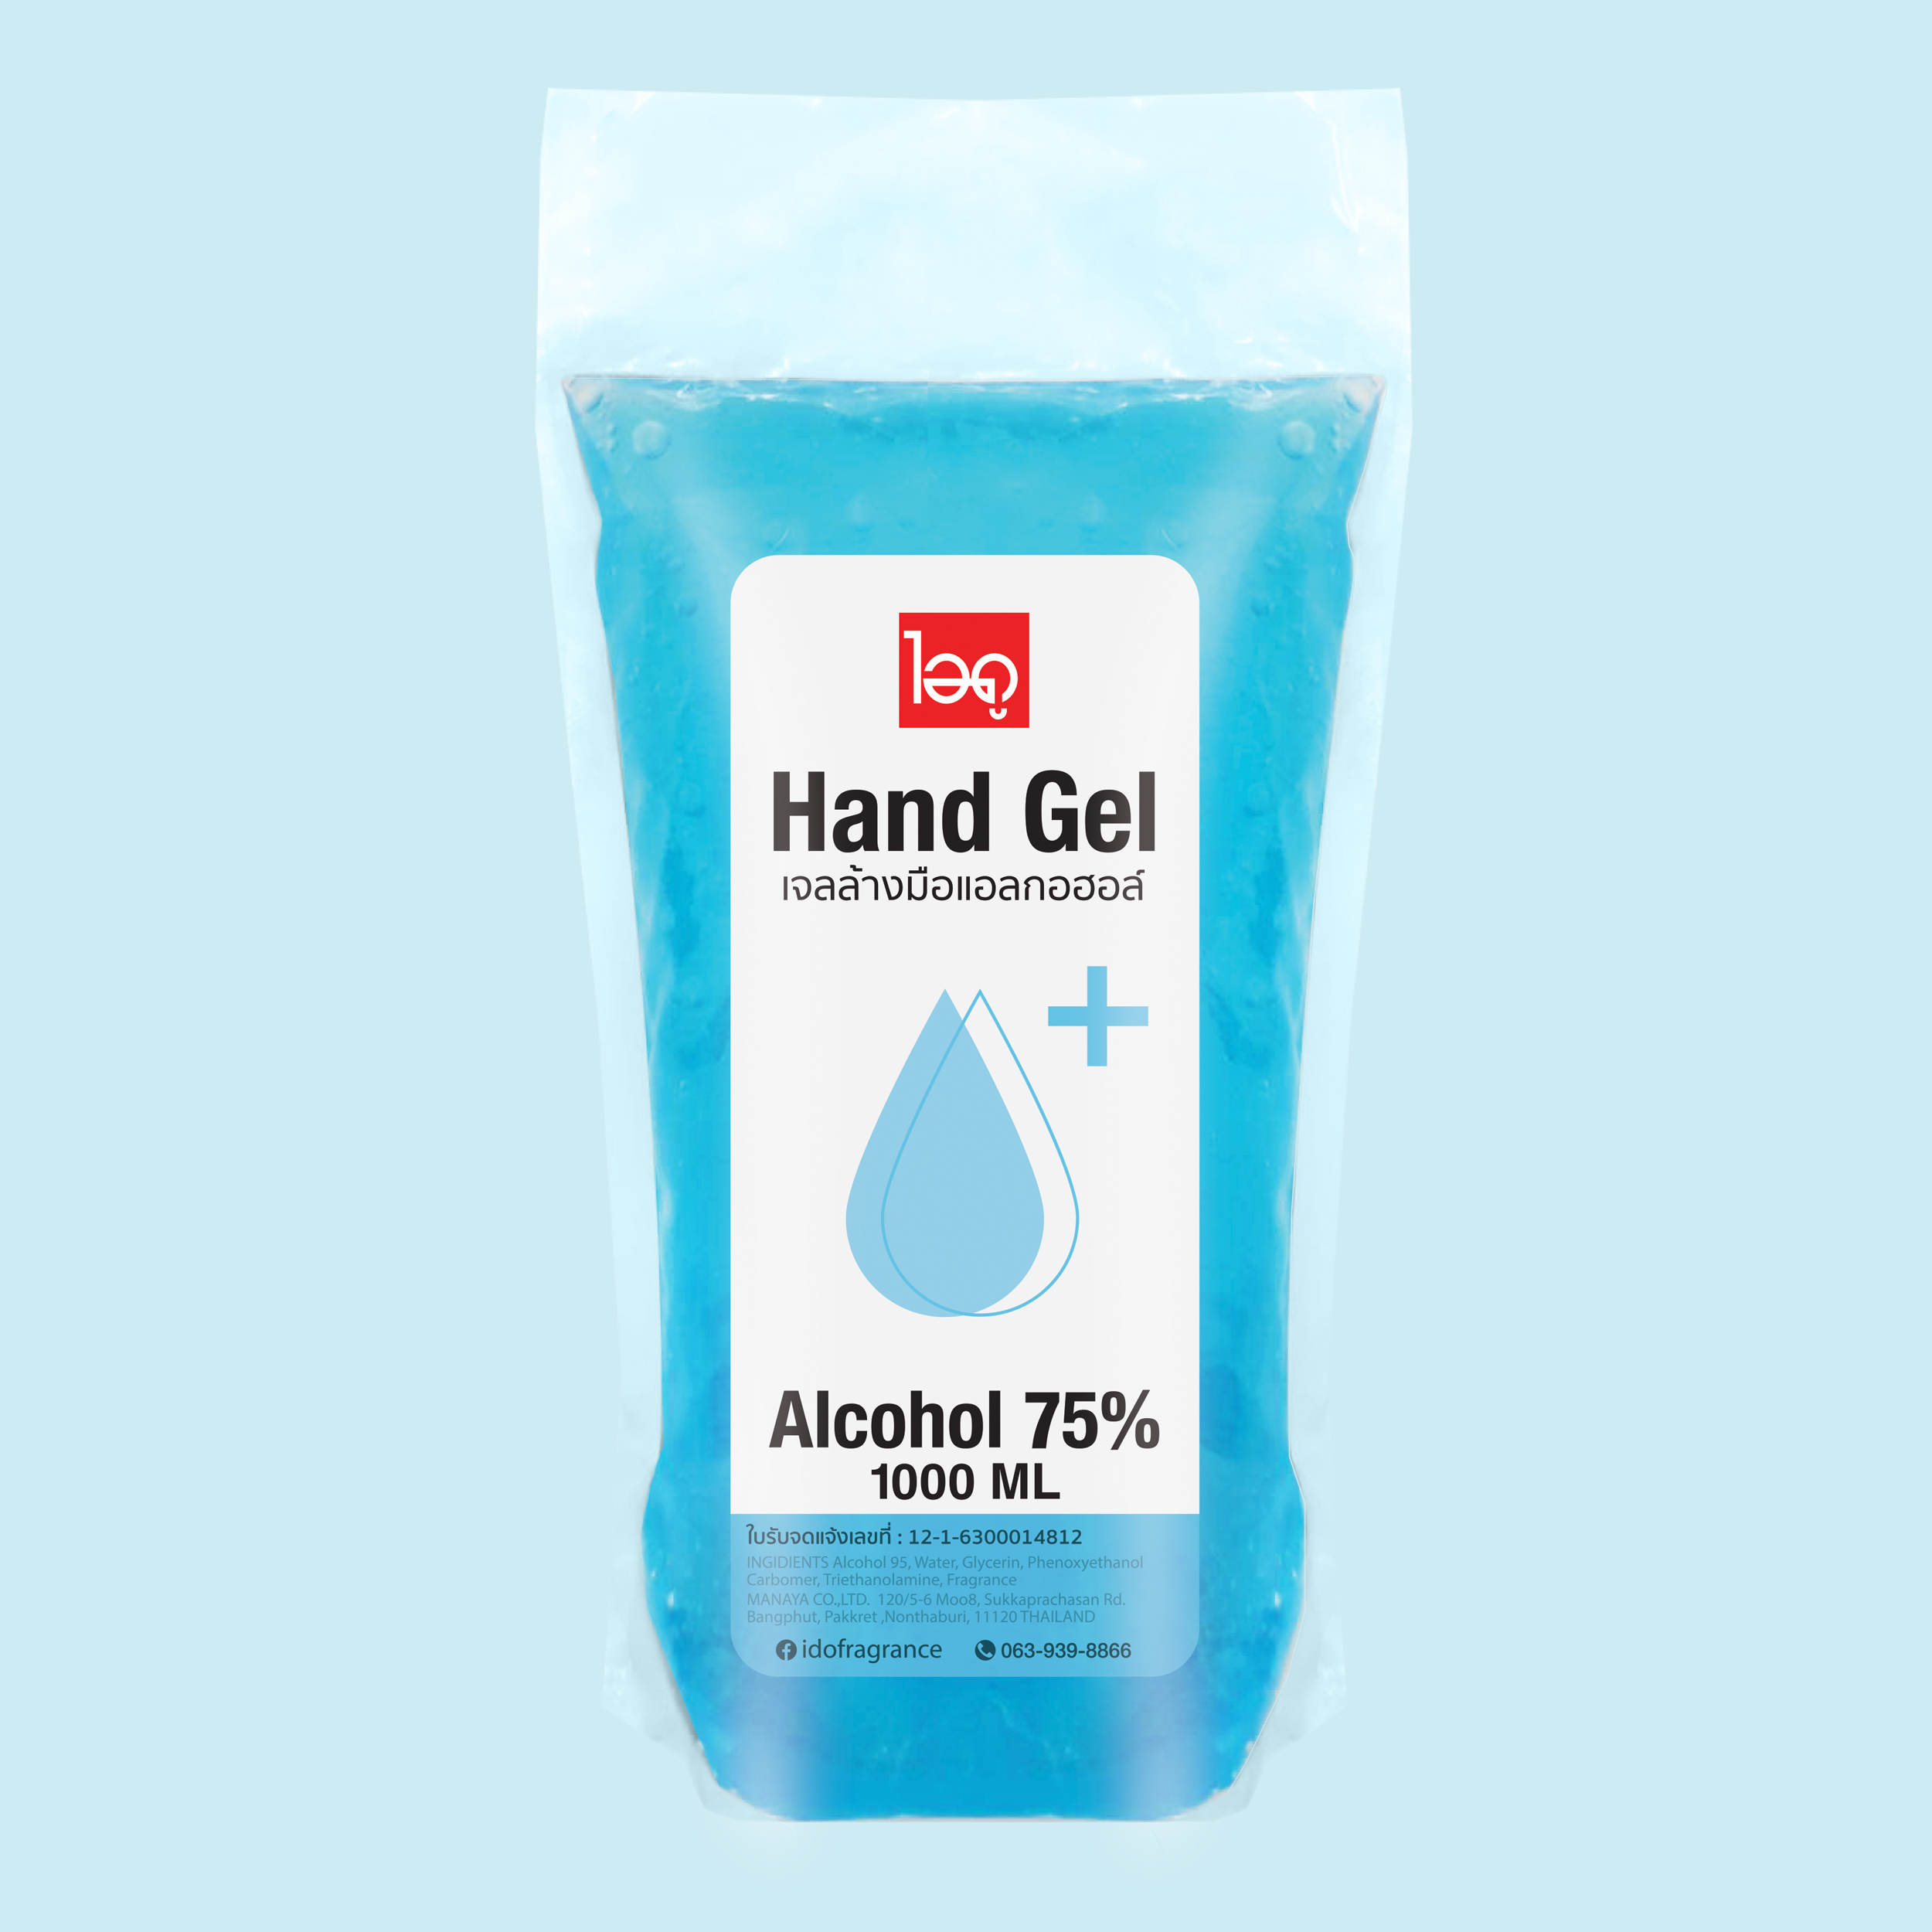 เจลล้างมือ แอลกอฮอลล์เจล 75% hand sanitizer gel ขนาด 1000ml แบบเติม 1 ลิตร by ido